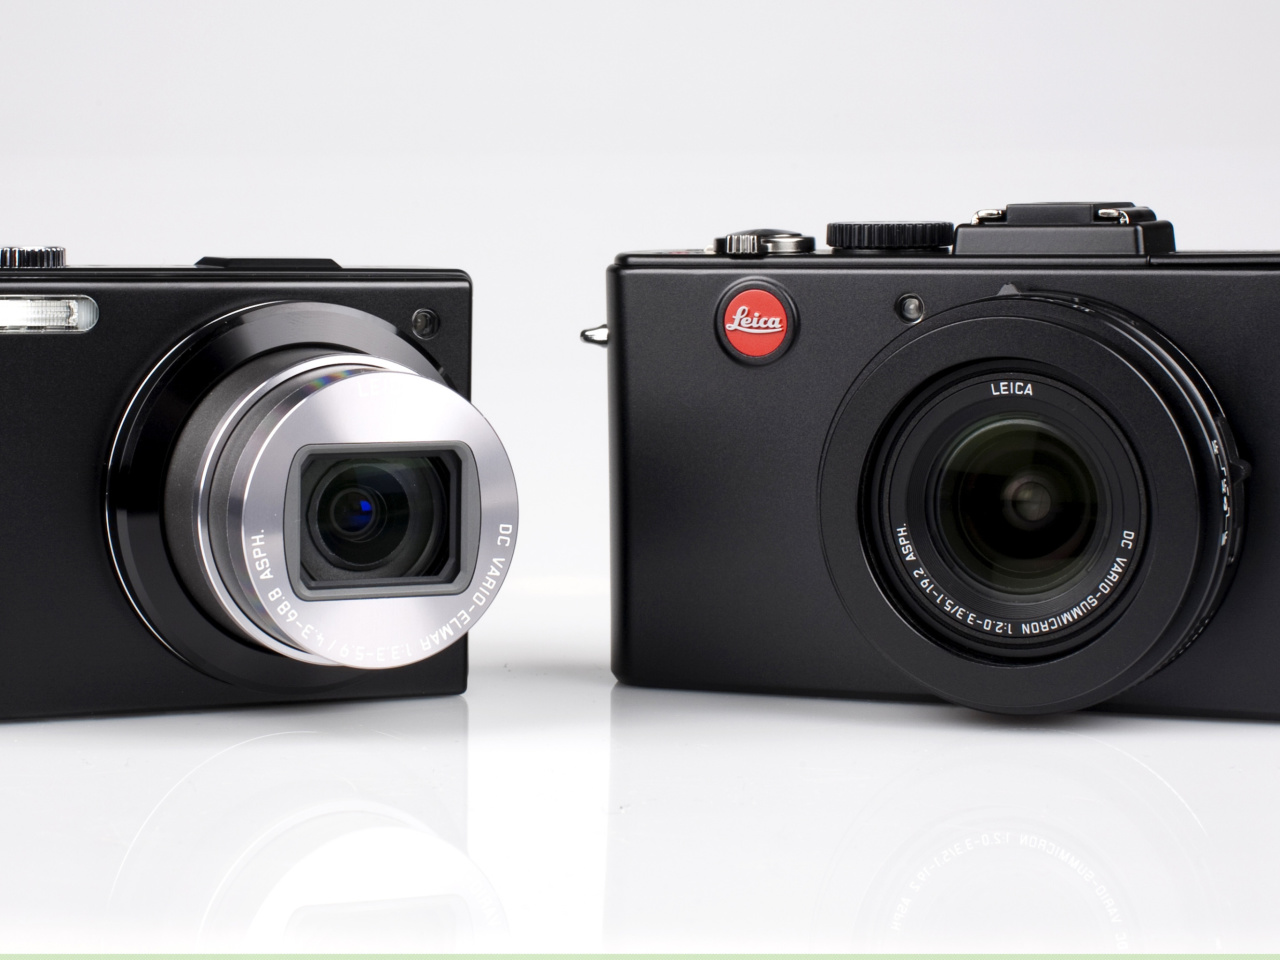 Das Leica D Lux 5 and Leica V LUX 1 Wallpaper 1280x960